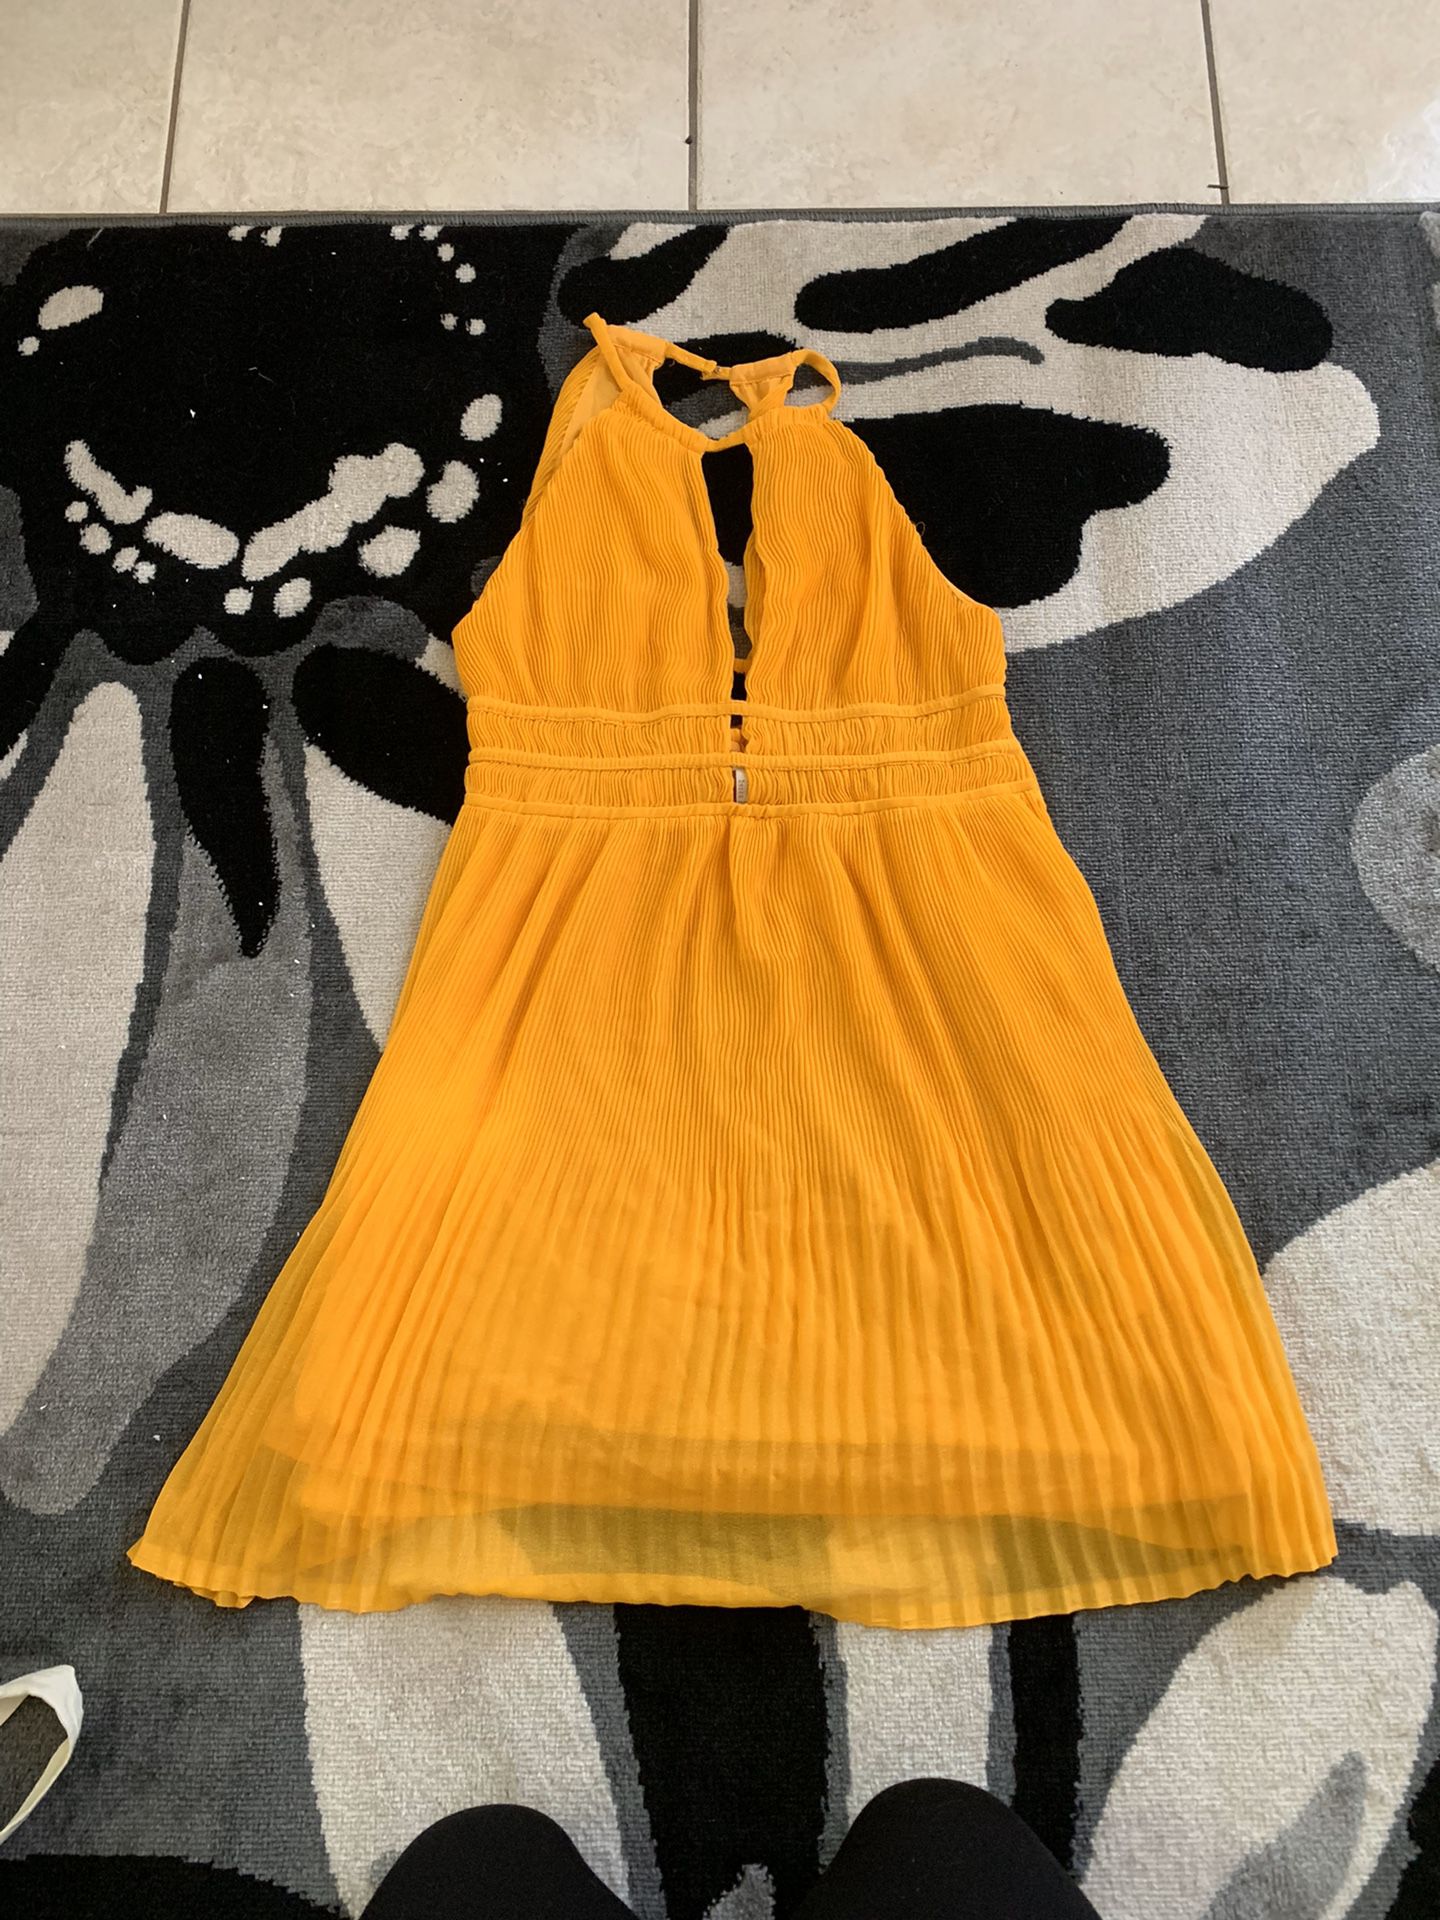 H&M yellow dress